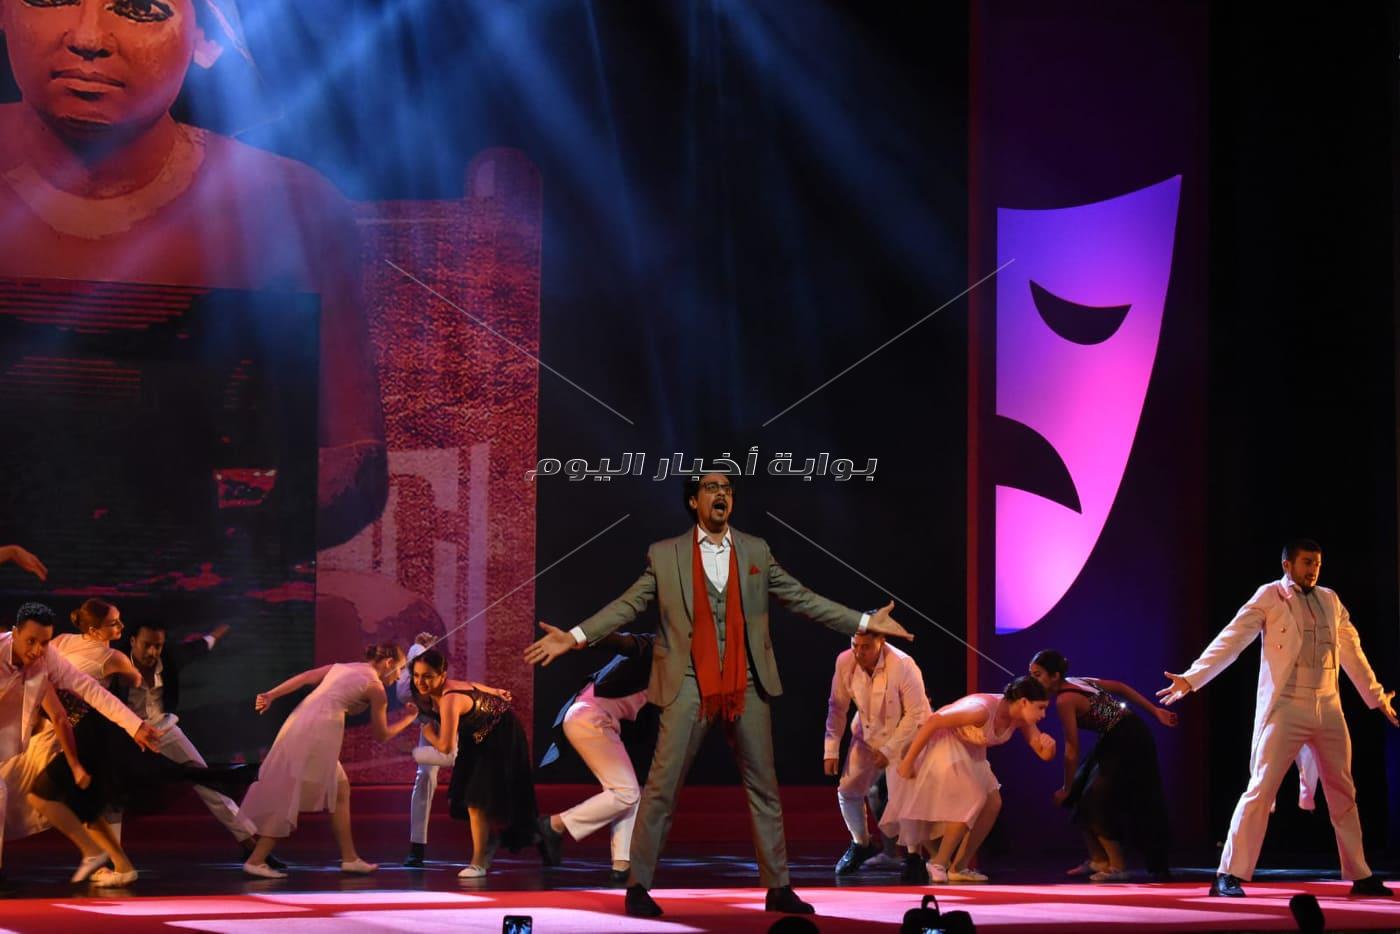 بدء حفل افتتاح المهرجان القومي للمسرح المصري ال 14 بدار الأوبرا	